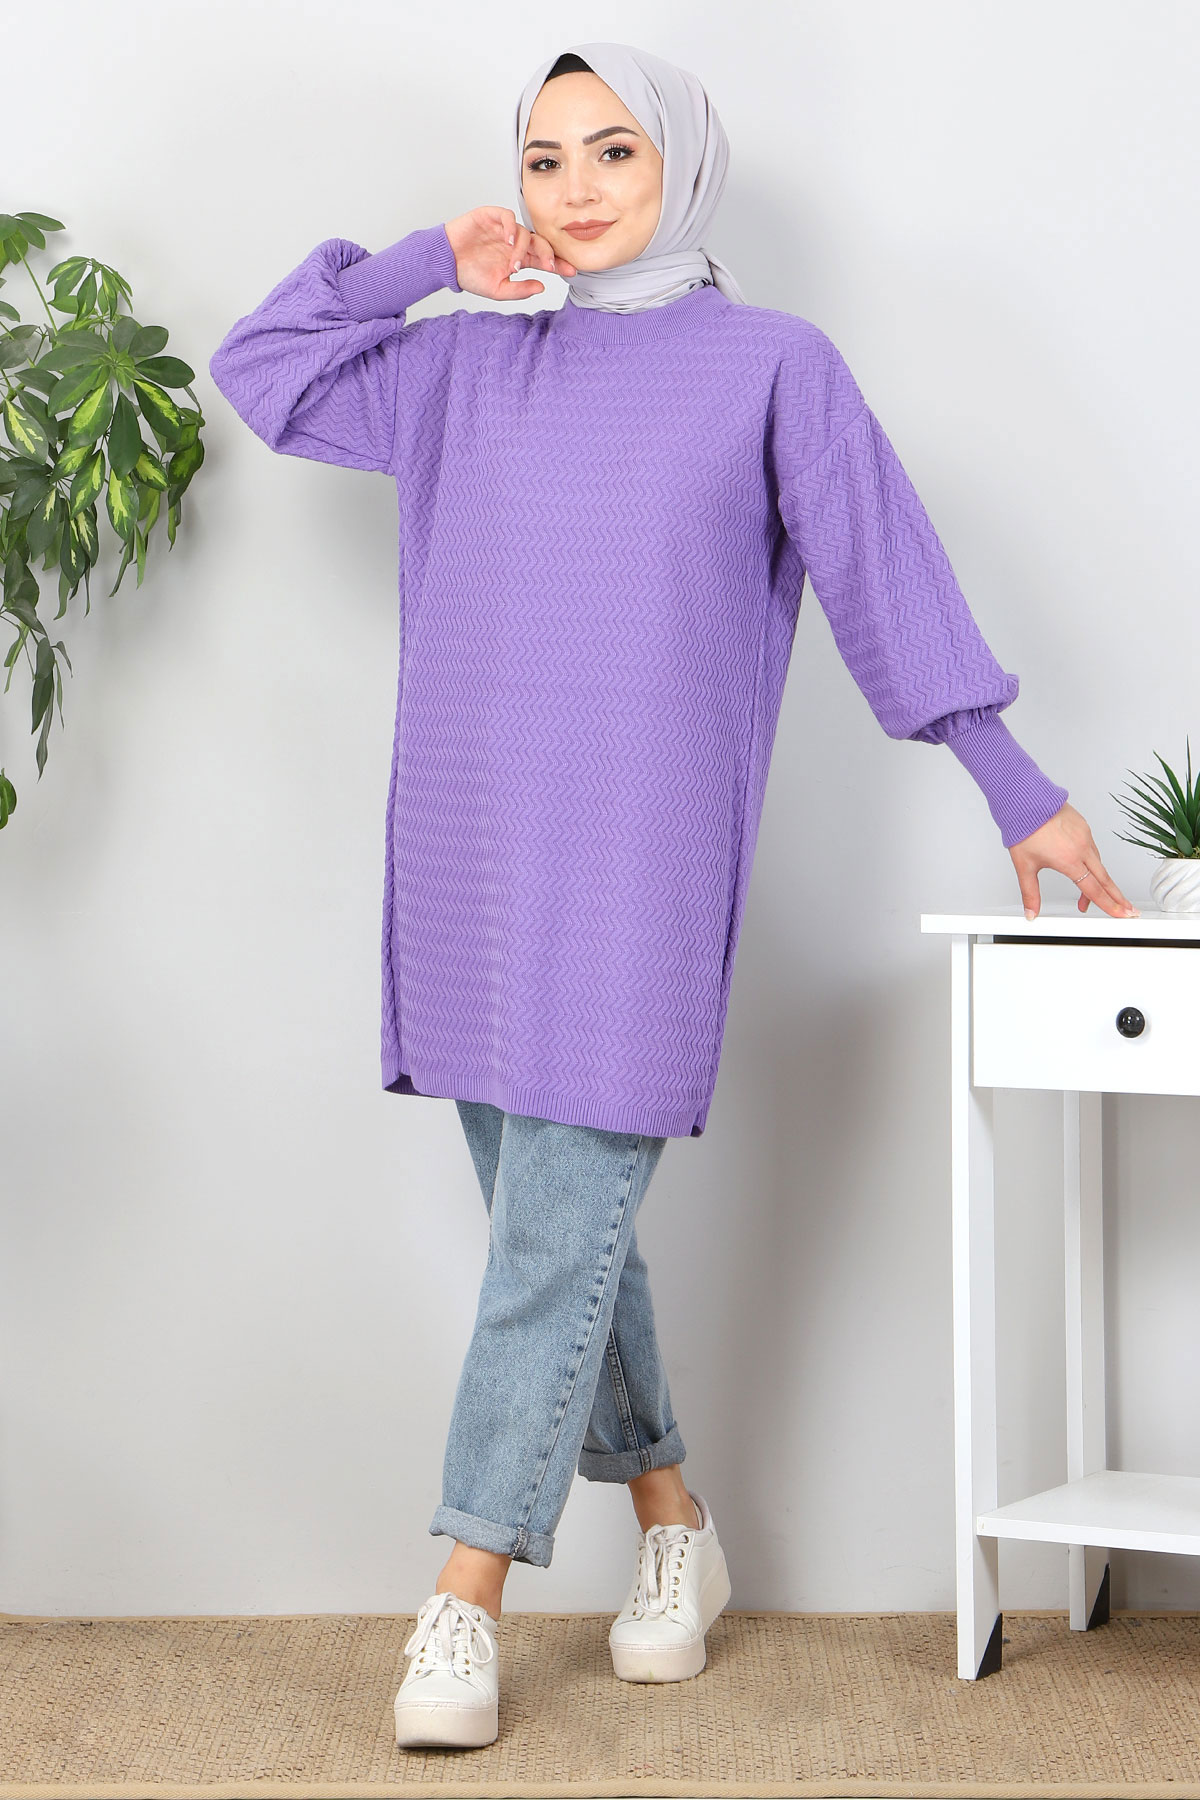 Tesettür Dünyası - Zigzag Patterned Knitwear Tunic TSD5180 Purple